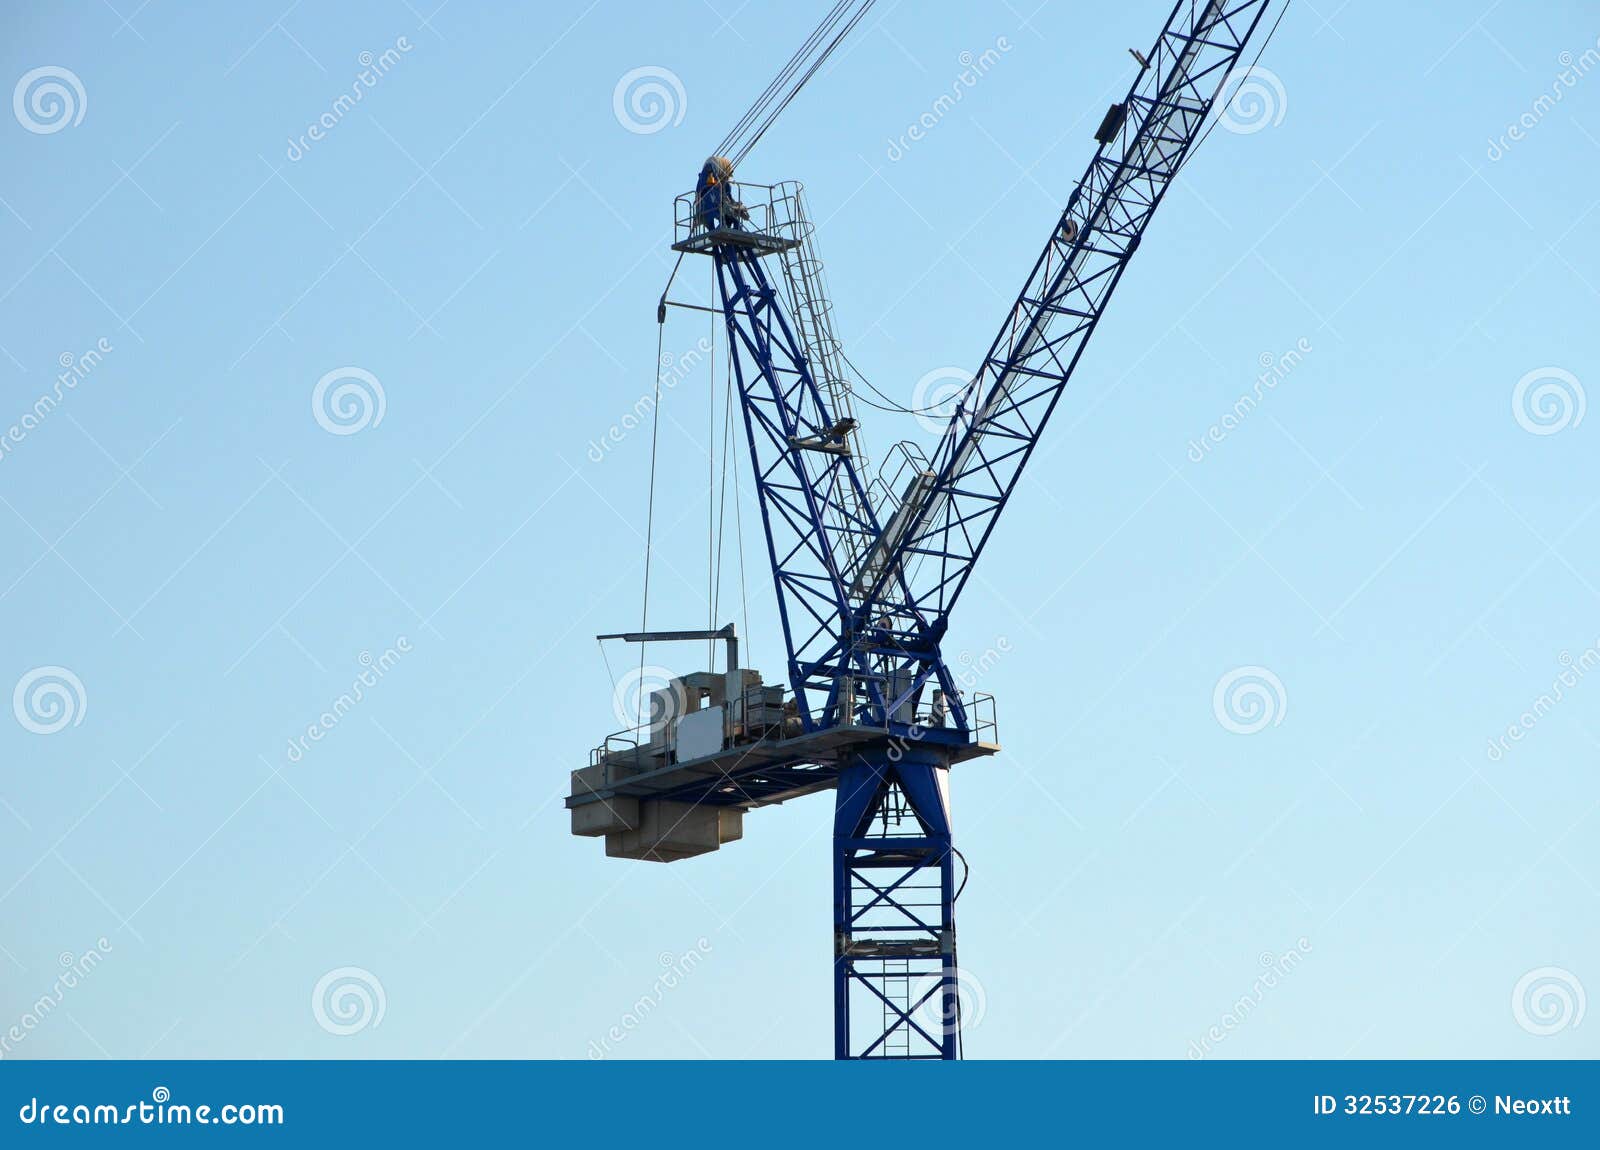 port container crane